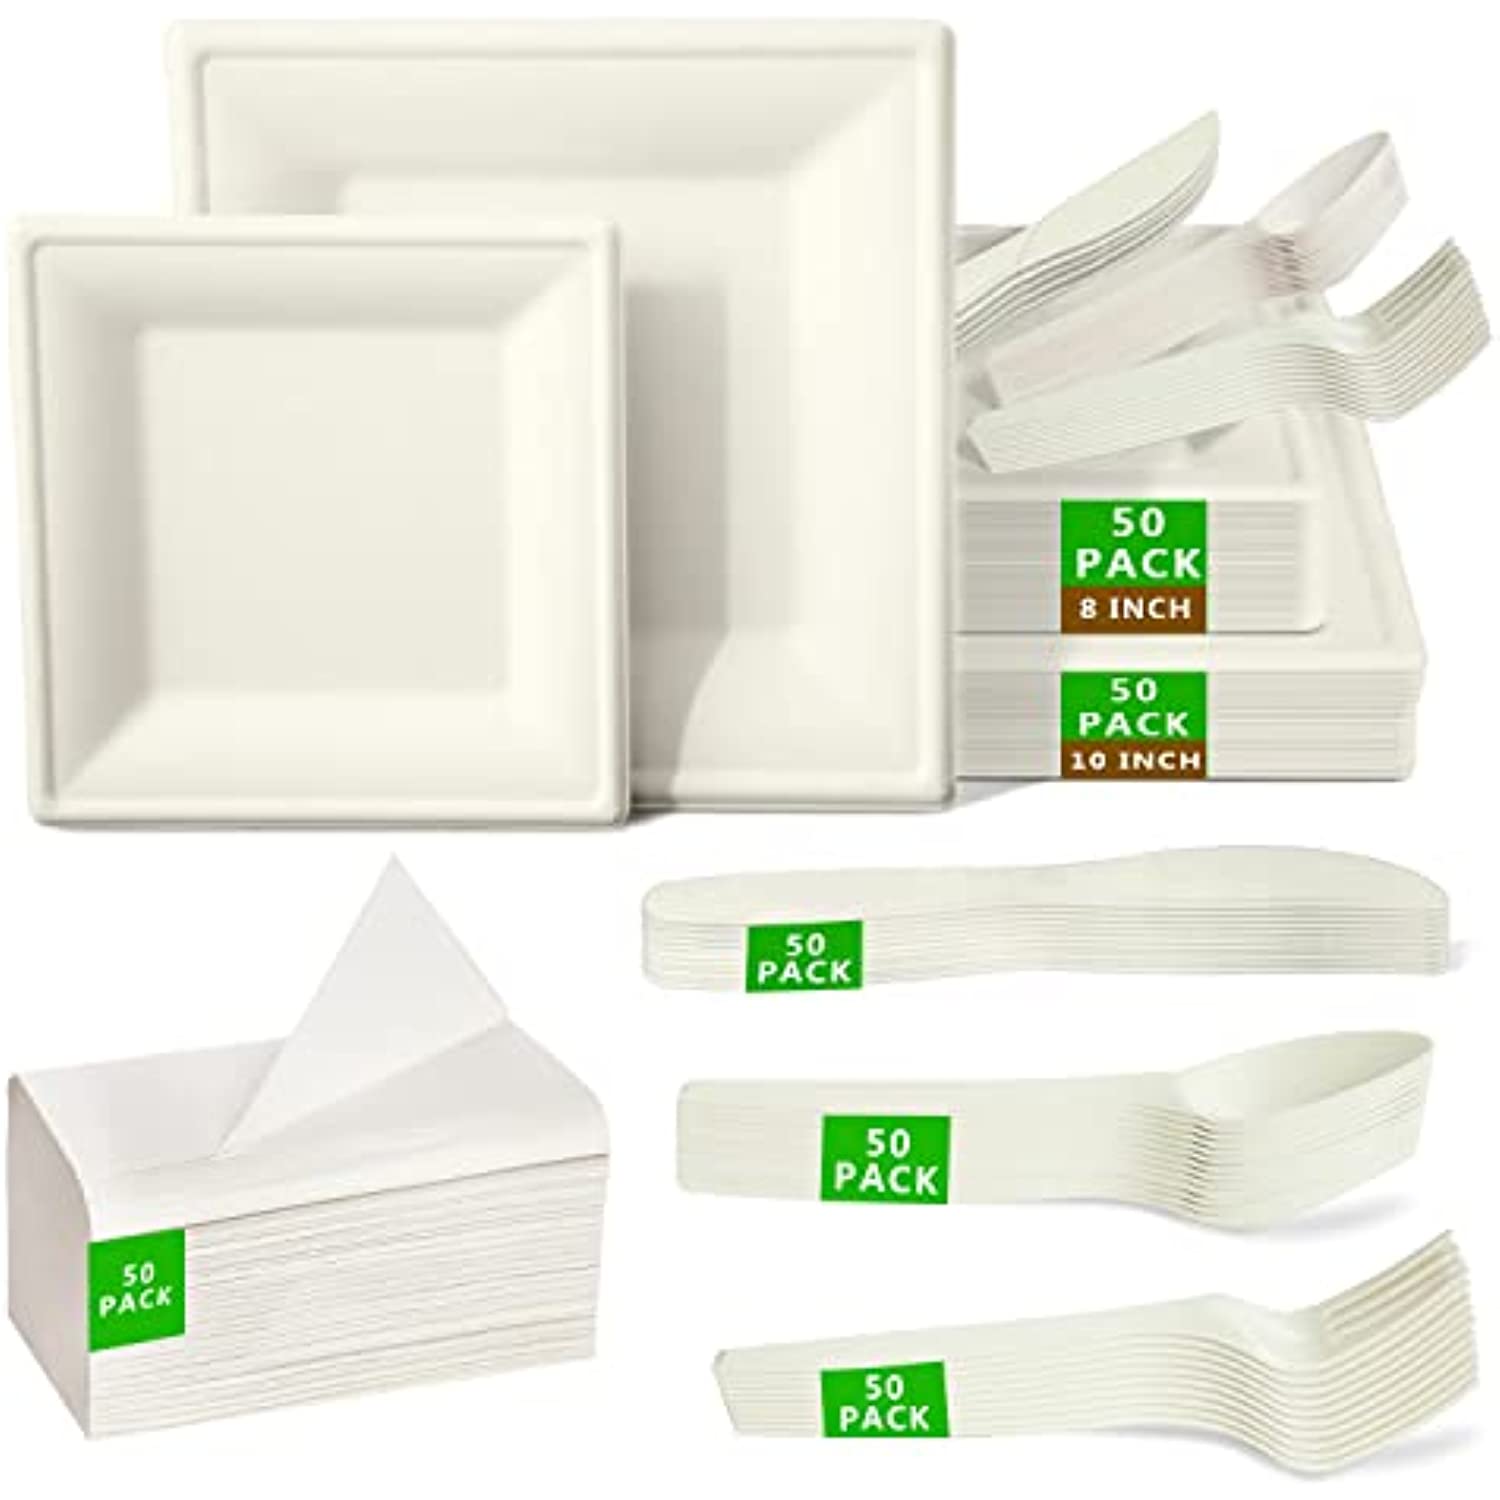 Compostable Disposable Paper Plates Set - 300 Pcs